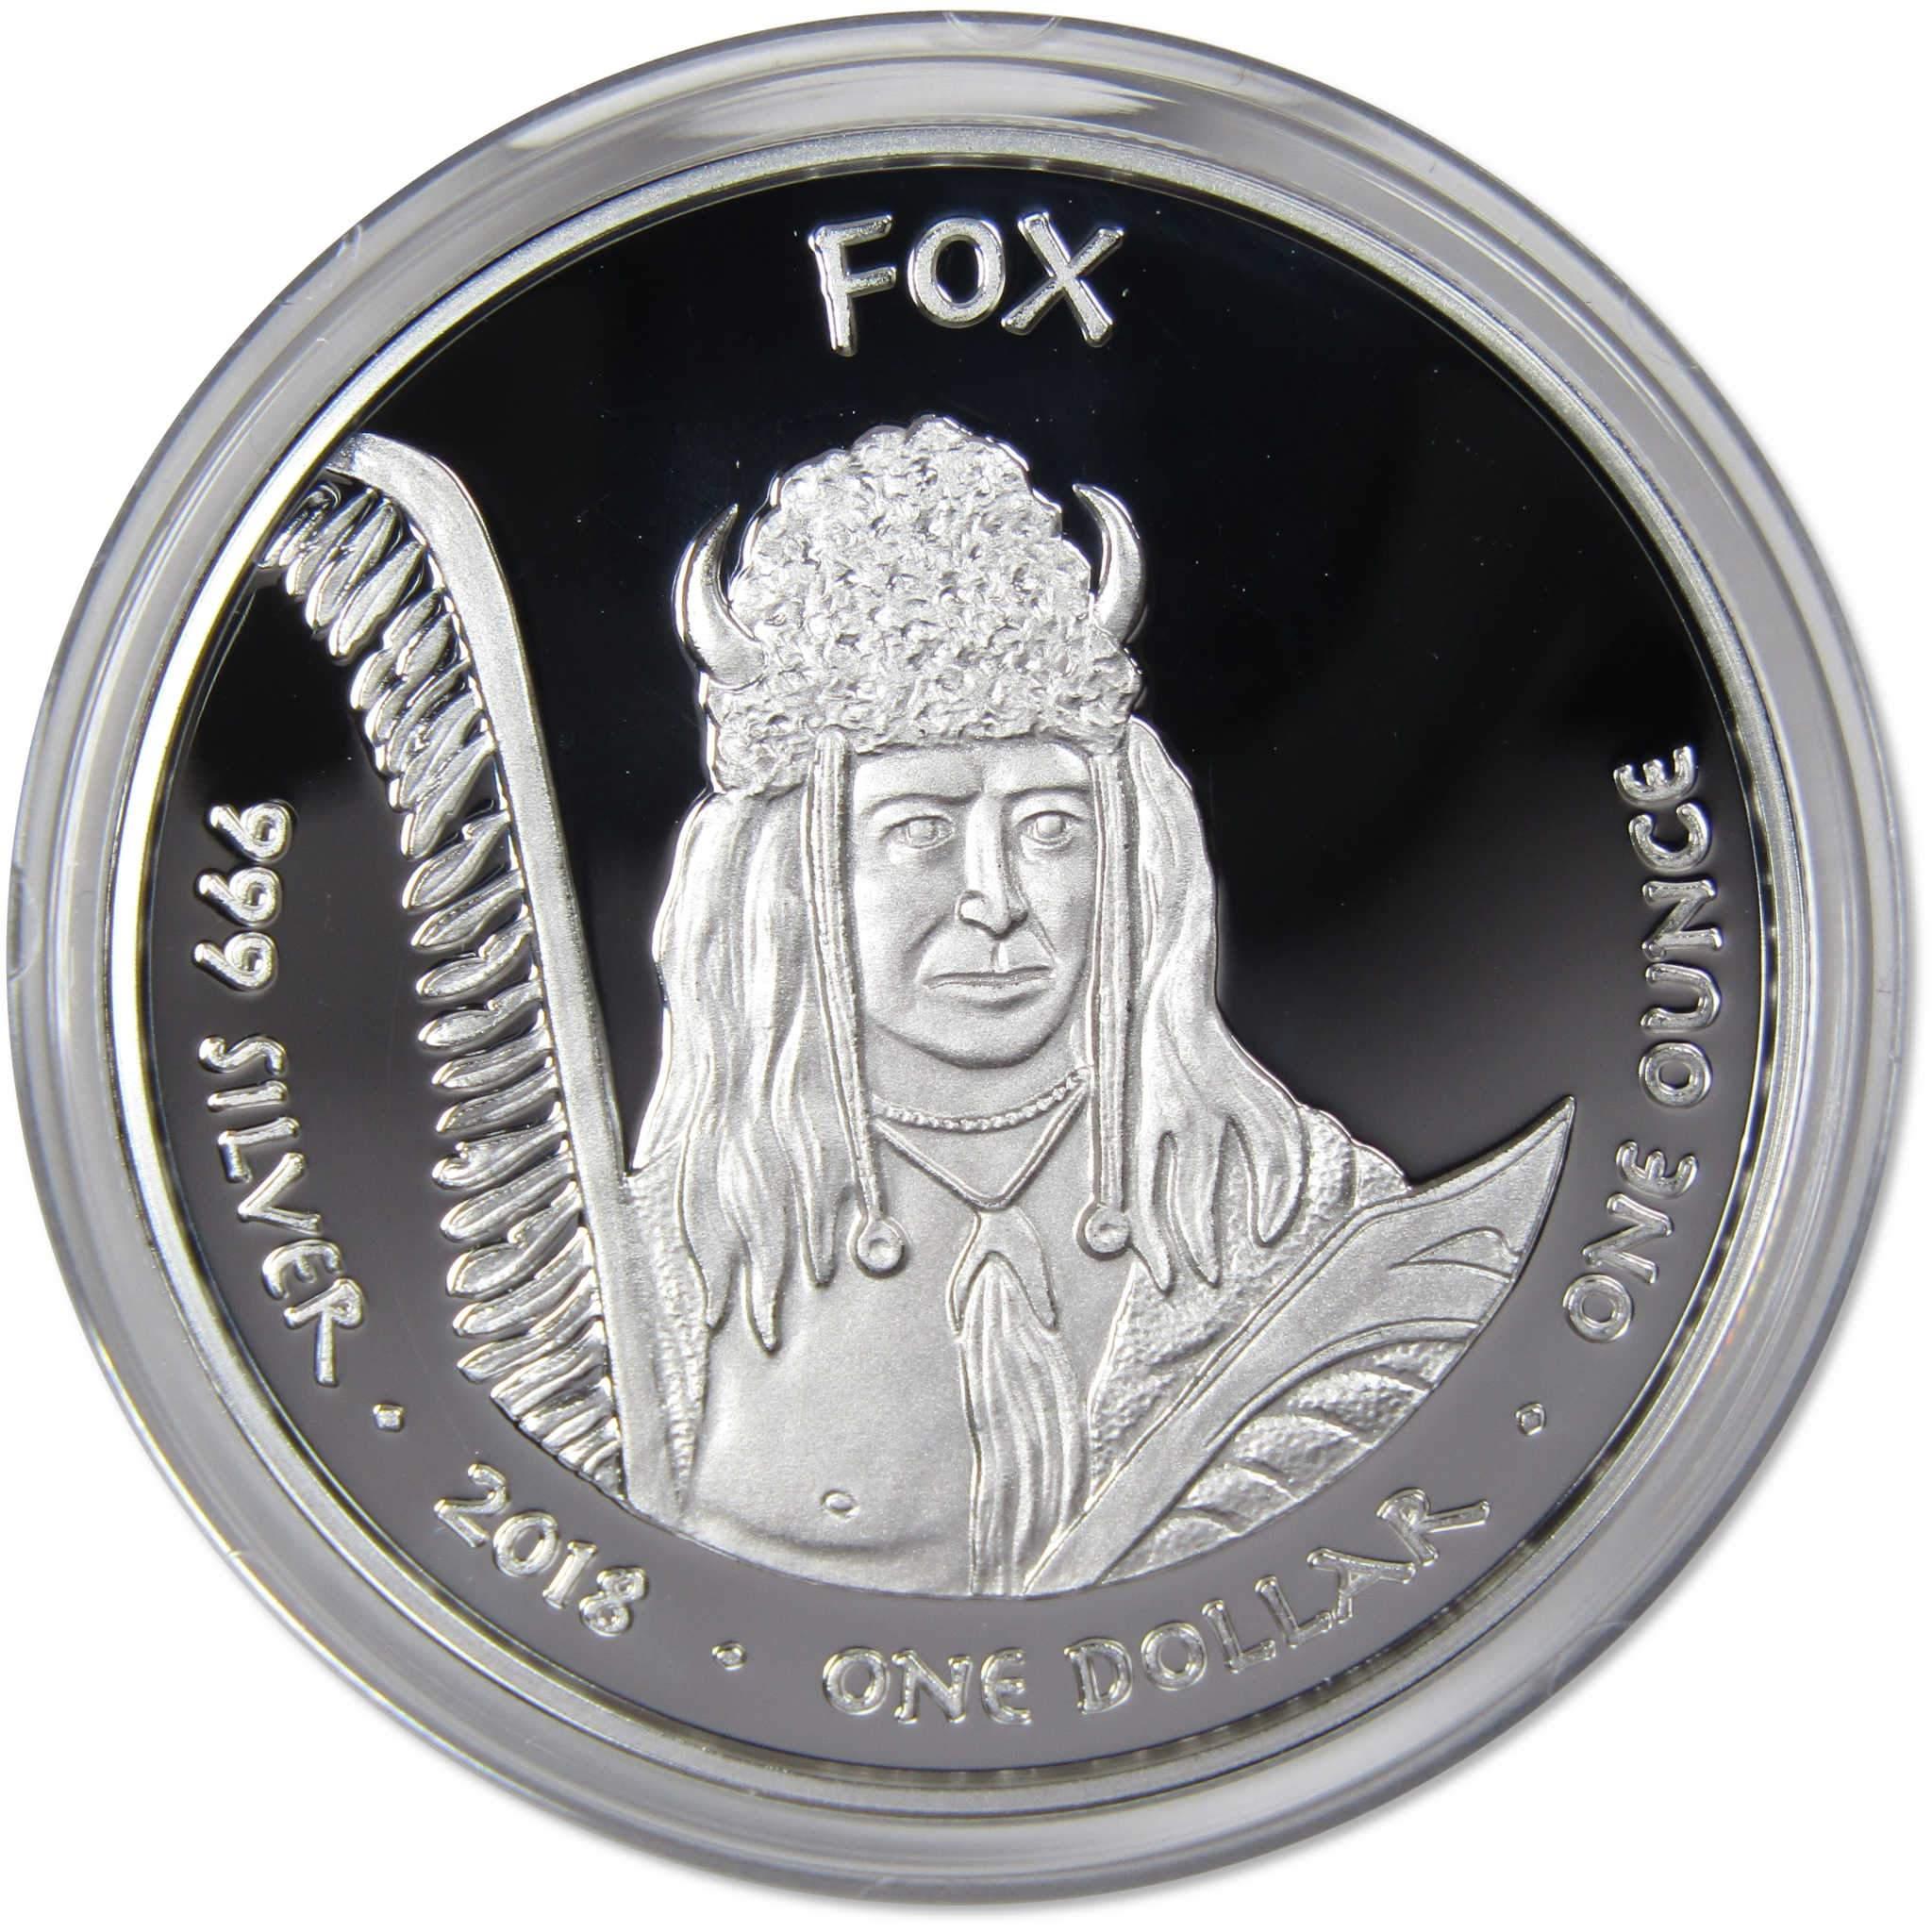 2018 Native American Jamul Fox Iowa Rabbit 1 oz .999 Fine Silver $1 Proof Coin